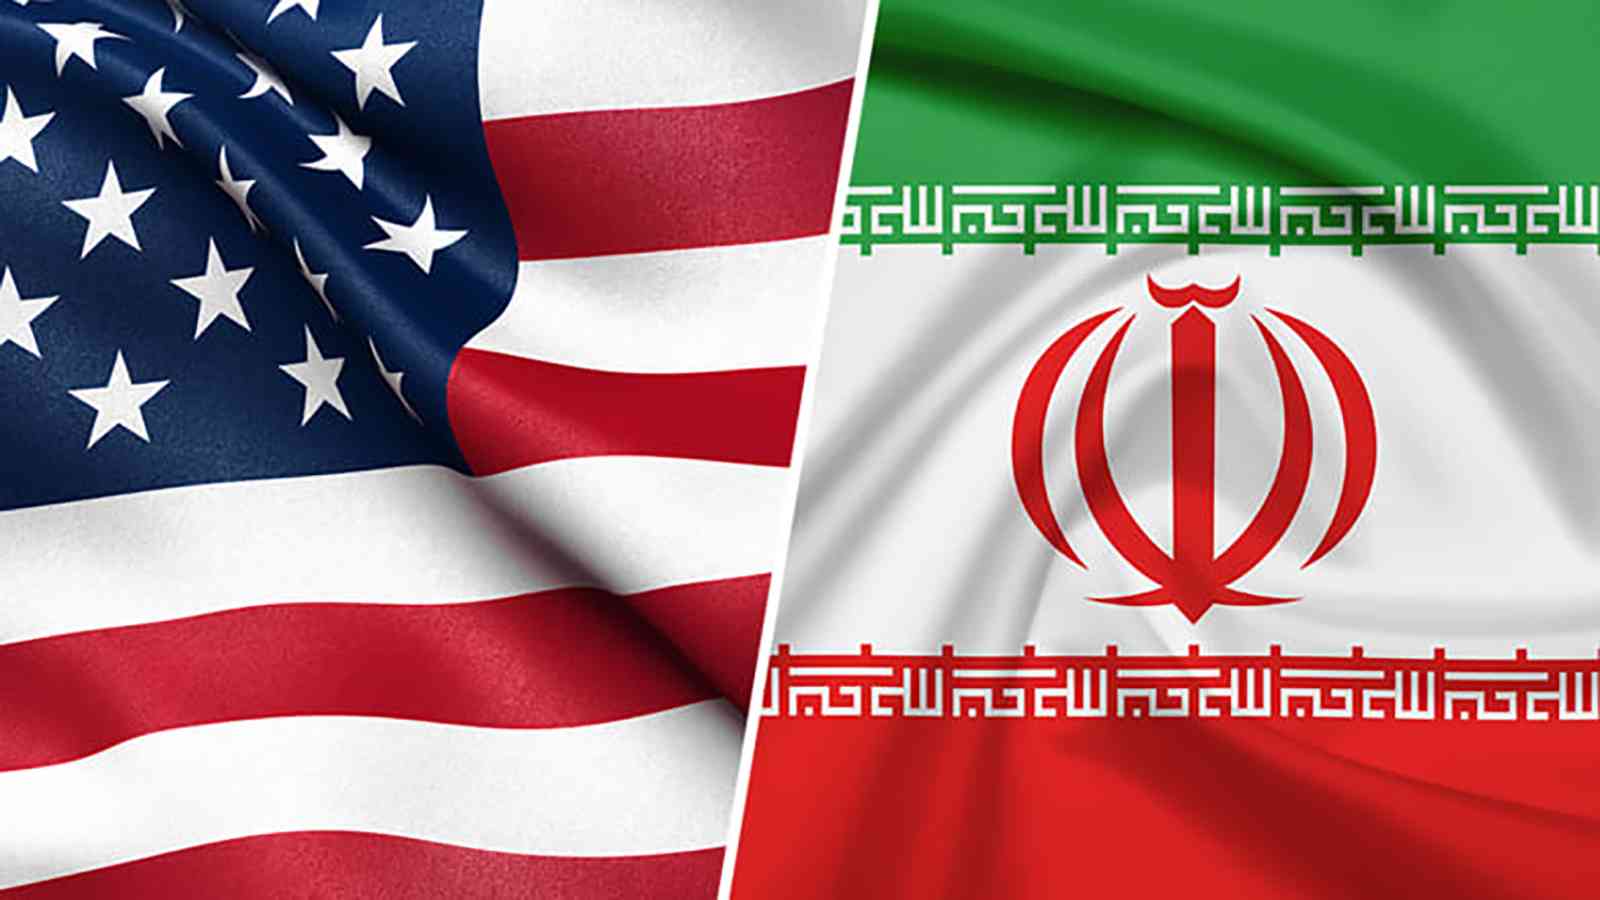  واشنطن تلوّح بخيار عسكري ضد إيران إذا فشلت الدبلوماسية